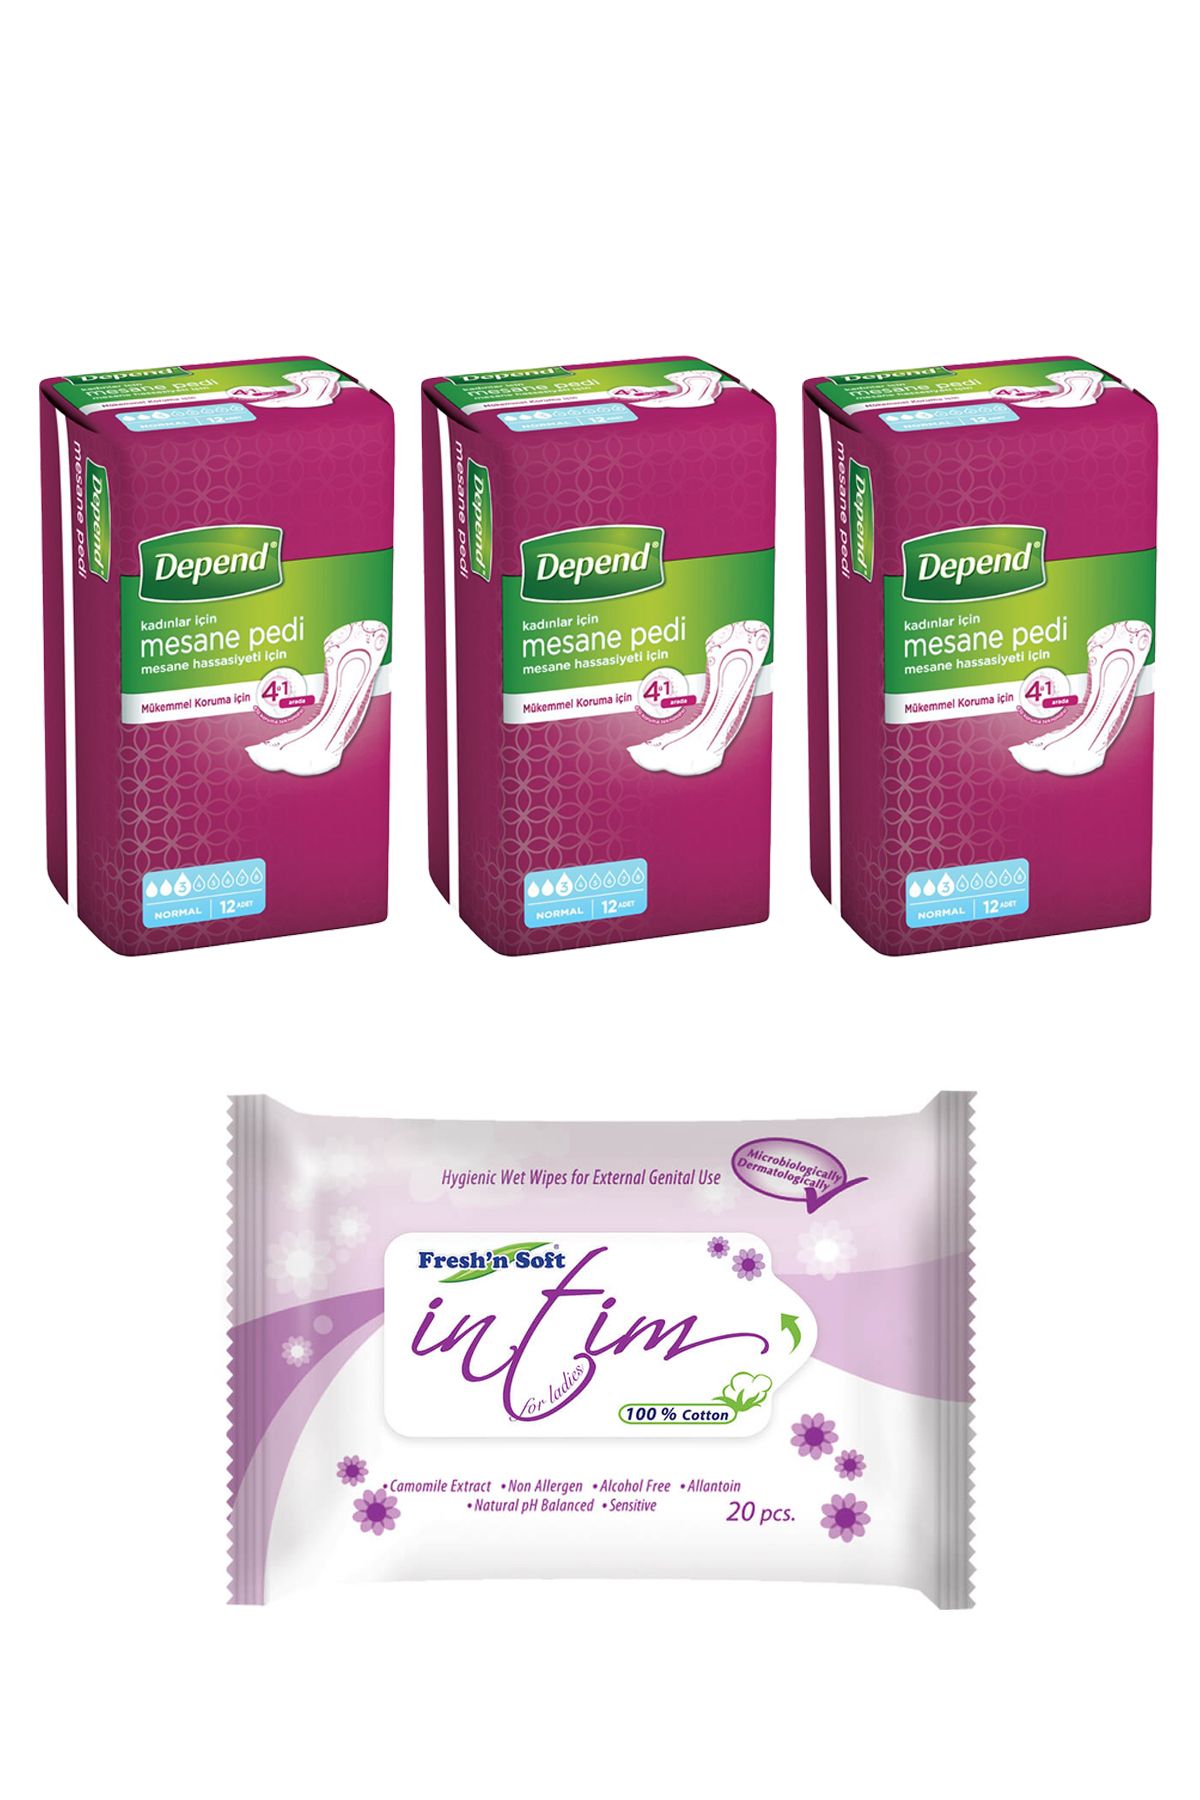 Depend Kadınlar için Mesane Pedi 3 Paket 36 Adet + İntim Dış Genital Bölge Temizleme Mendili